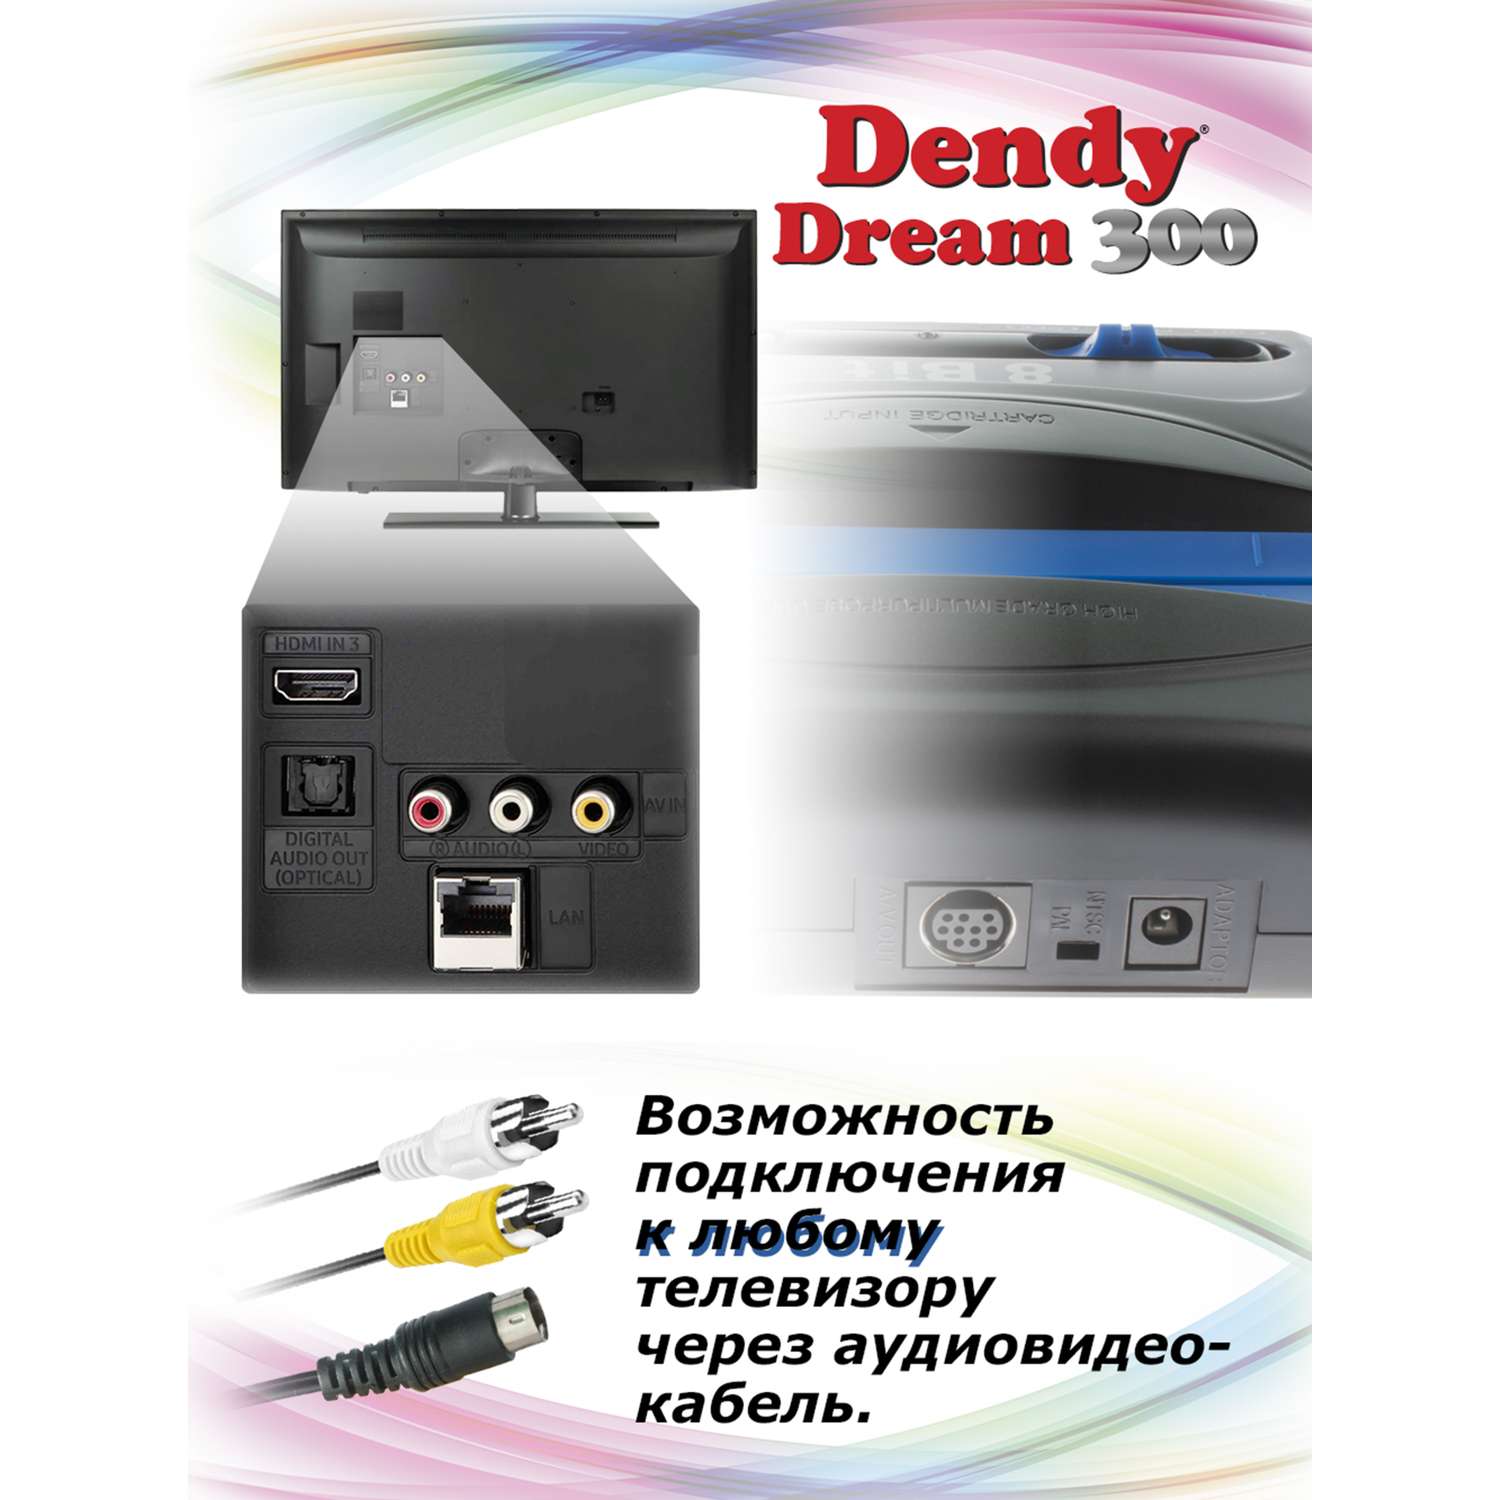 Игровая приставка Dendy Dream 300 игр (8-бит) - фото 7